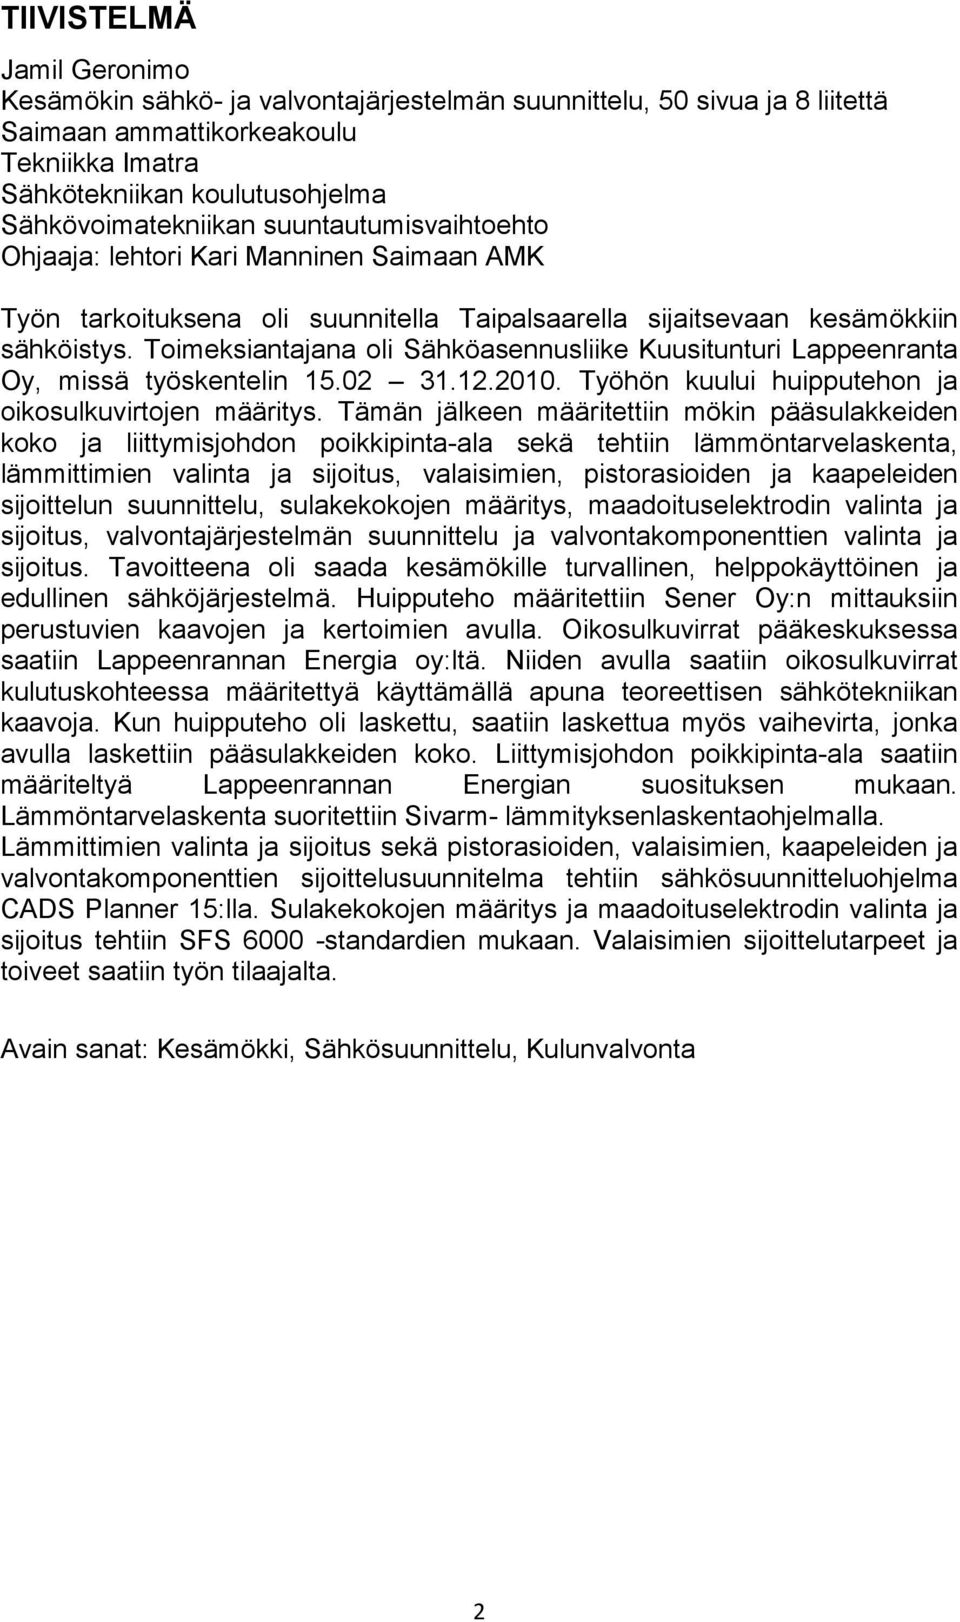 Toimeksiantajana oli Sähköasennusliike Kuusitunturi Lappeenranta Oy, missä työskentelin 15.02 31.12.2010. Työhön kuului huipputehon ja oikosulkuvirtojen määritys.